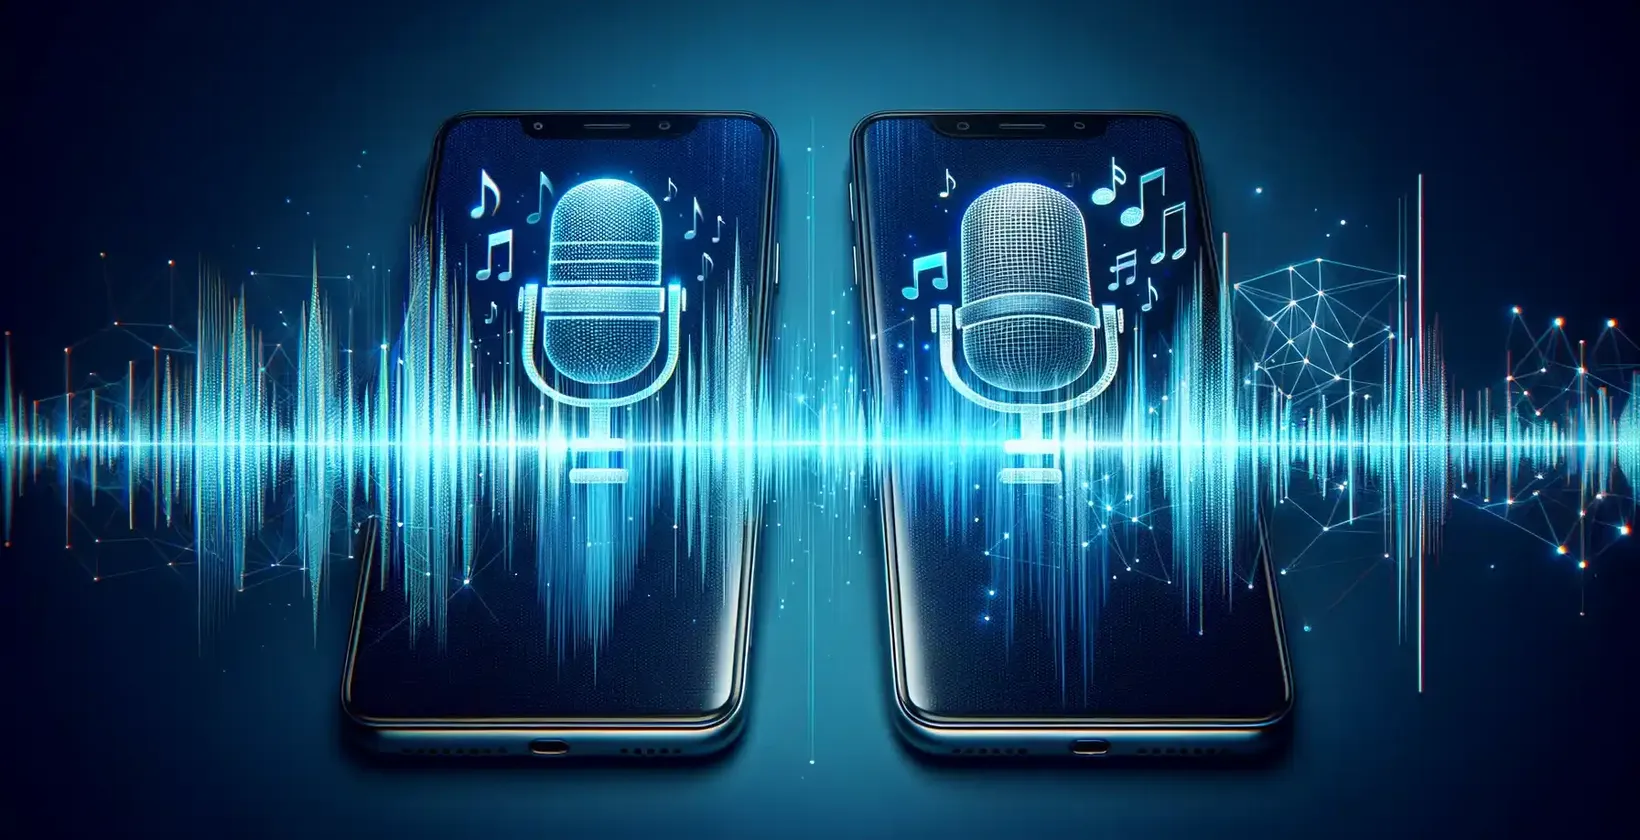 Két okostelefon, amelyeken vibráló mikrofon ikonok láthatók digitális hullámformák közepette, az átírási szolgáltatásokat szimbolizálva.